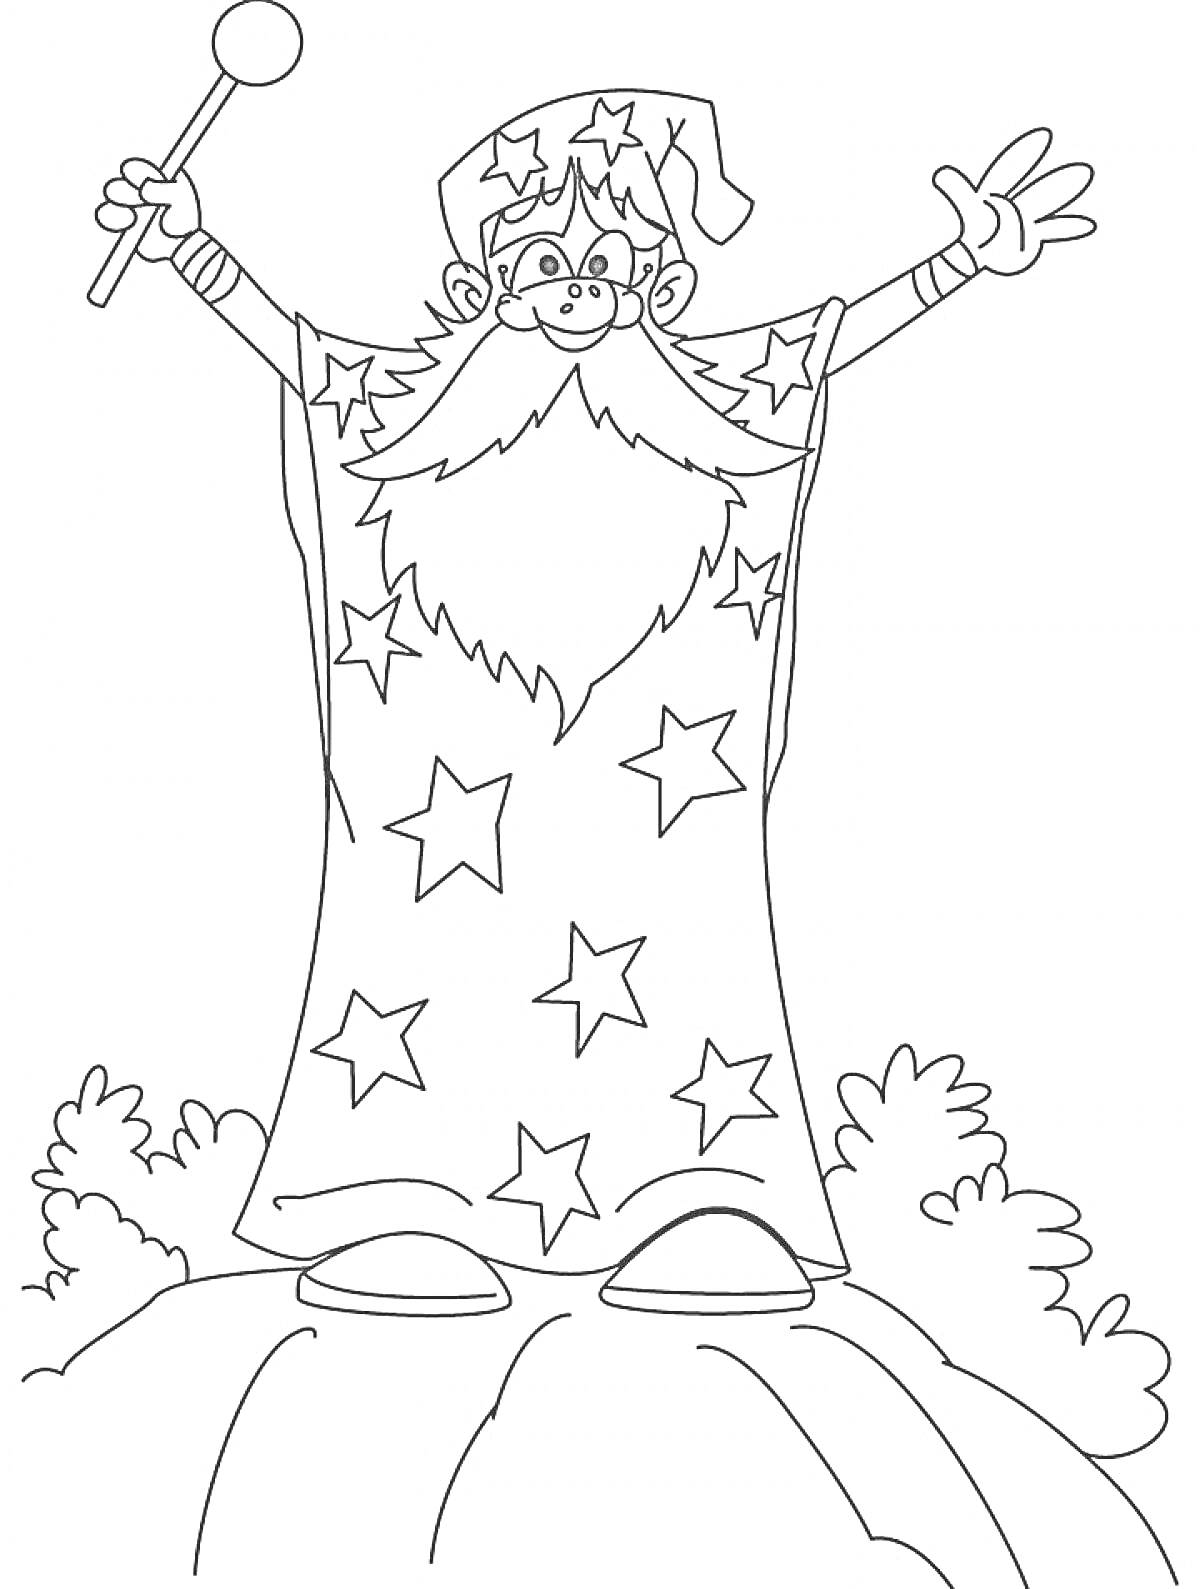 Волшебник со звездной мантией и волшебной палочкой стоит на вершине скалы среди кустов